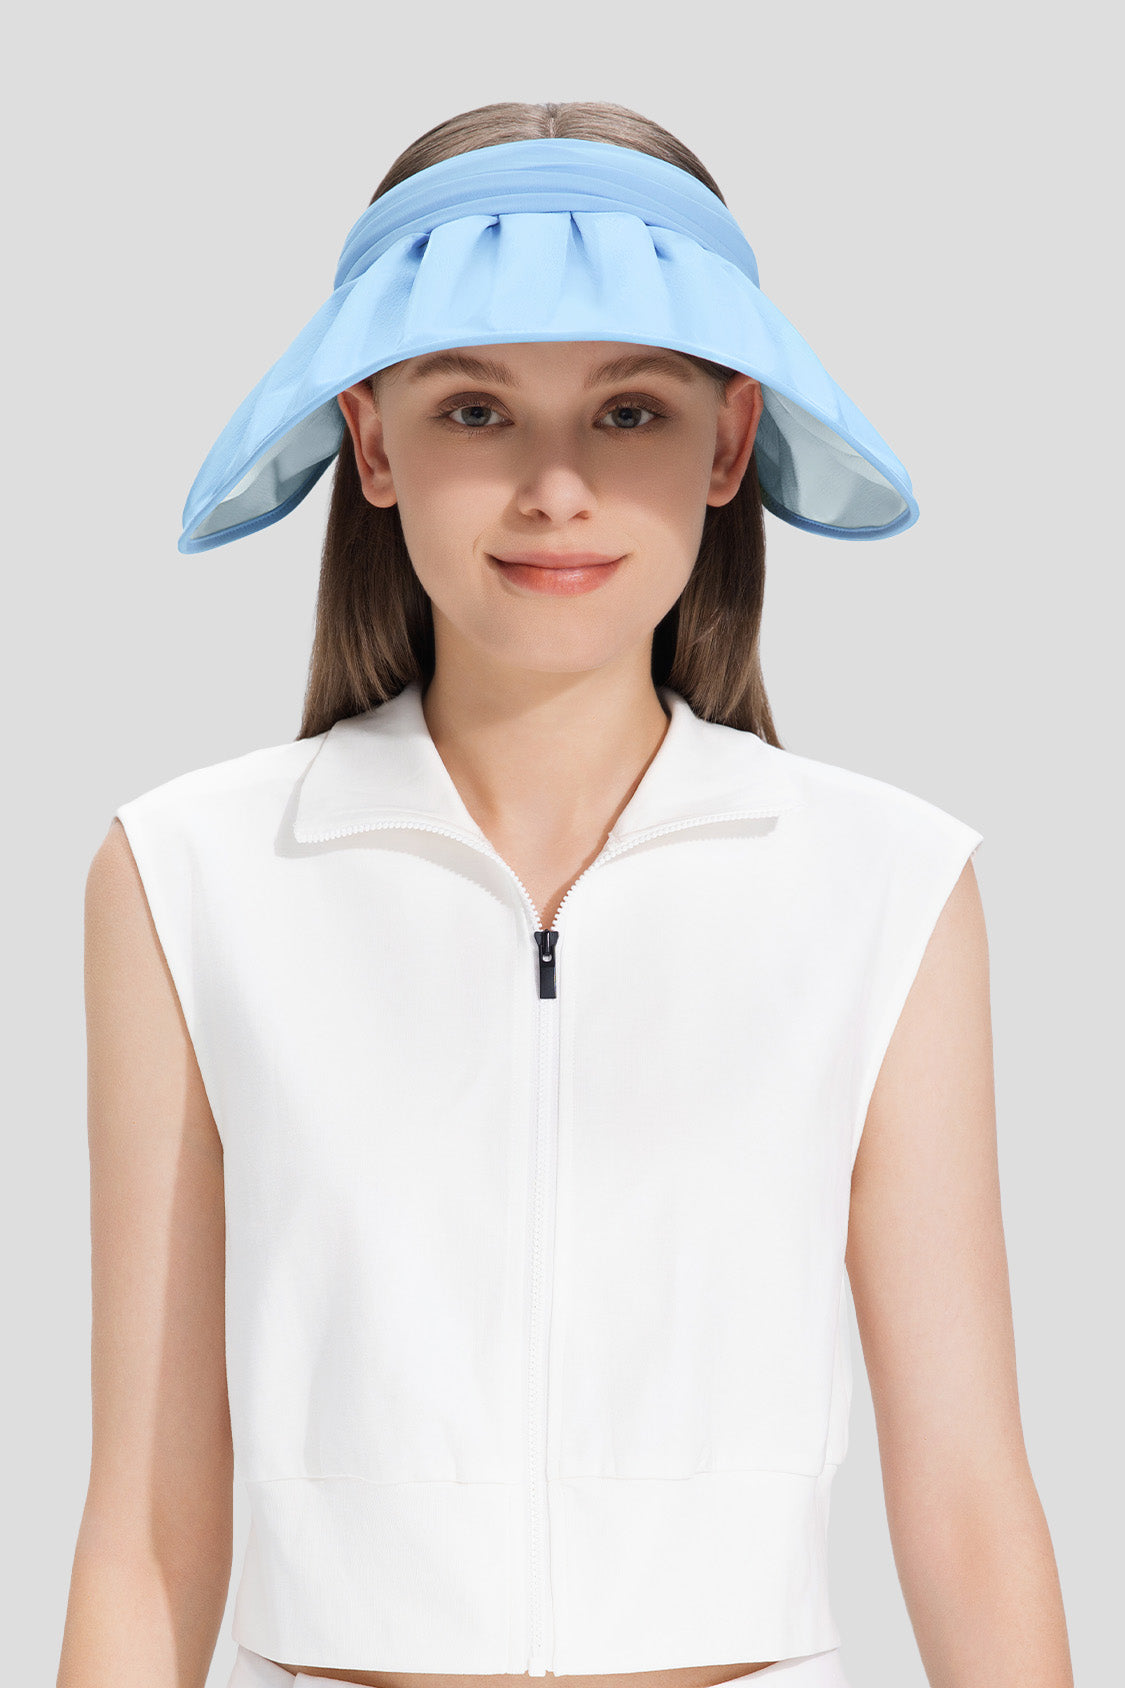 beneunder women's sun hats #color_blue